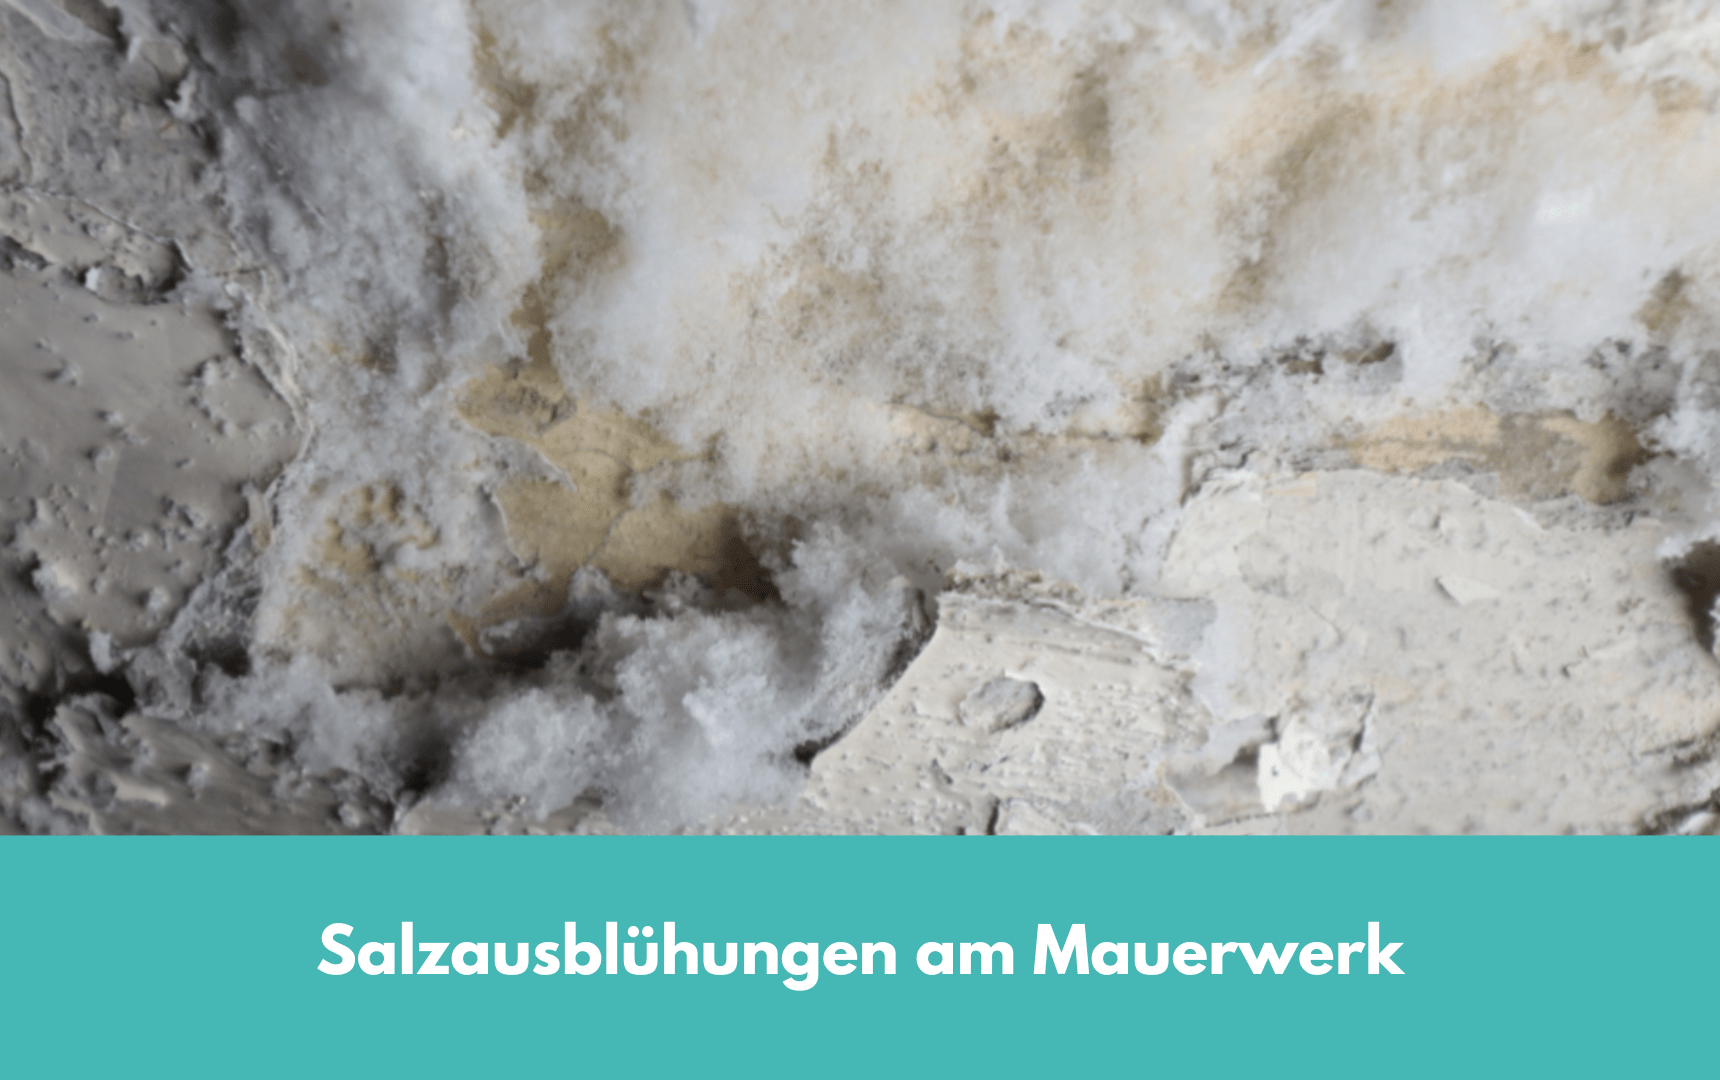 Salzausblühungen am Mauerwerk, Salze auf und in der Wand Bausachverständige, Baugutachter, Ingenieure f. Bautechnik Paderborn, Lünen, Dortmund